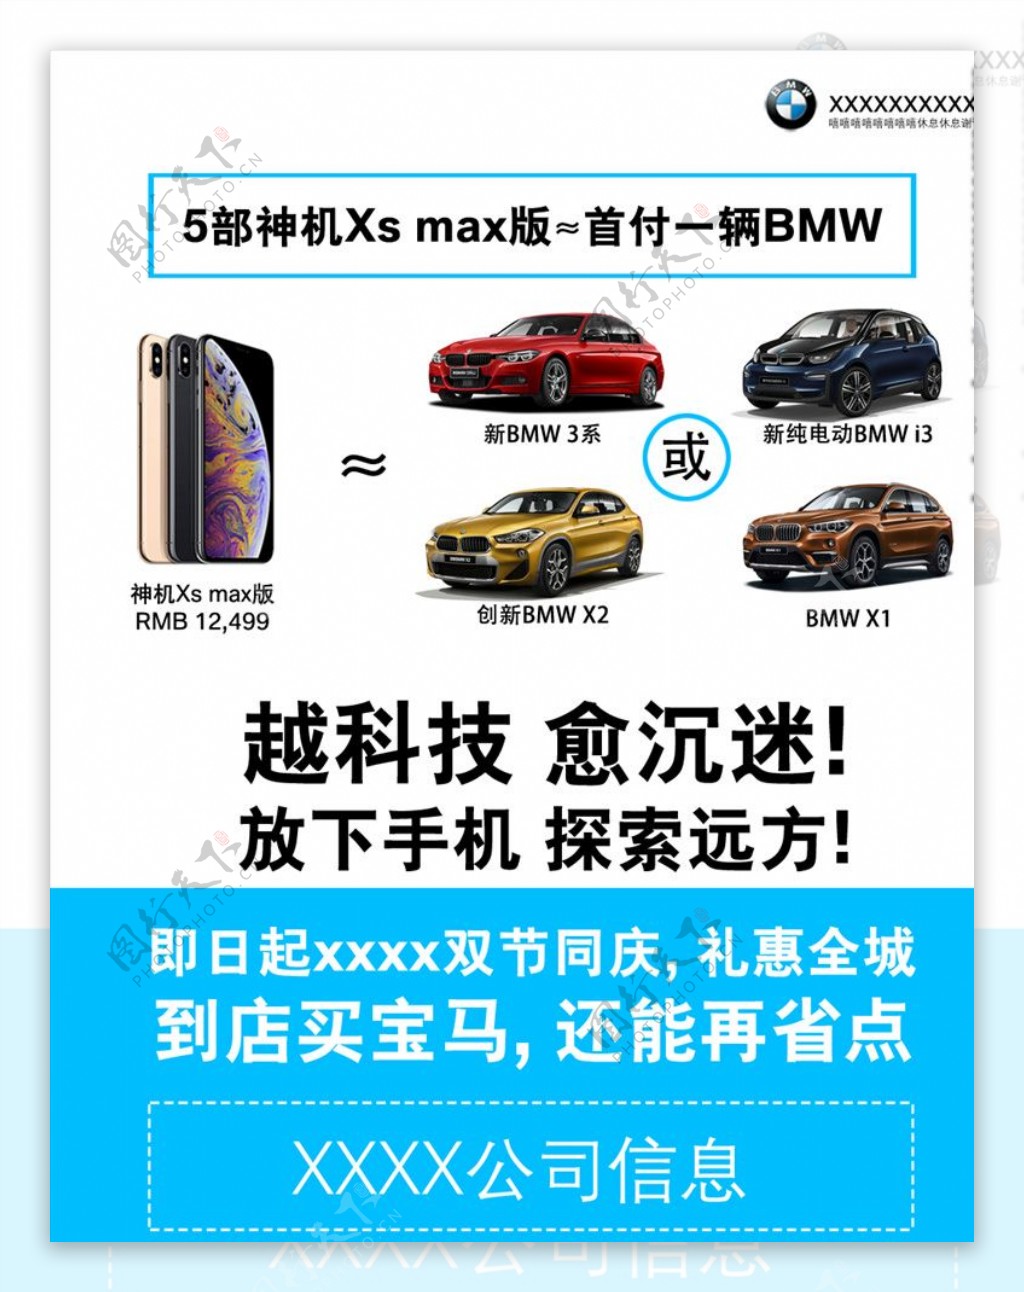 BMWvs手机宣传图